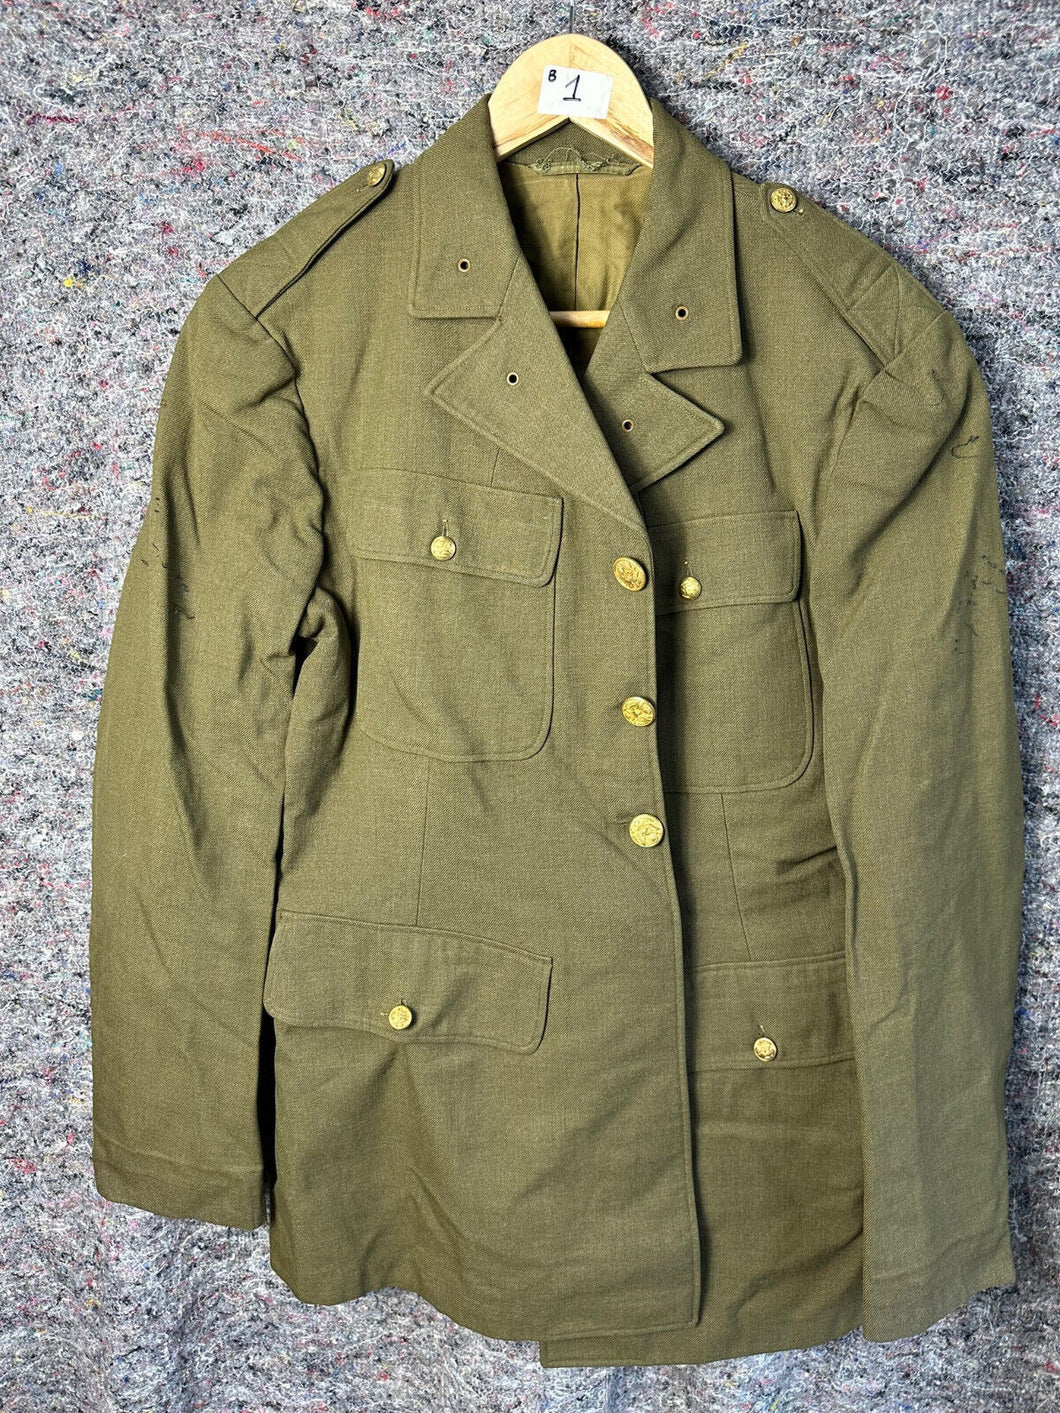 Original US Army WW2 Class A Uniform Jacket - 38